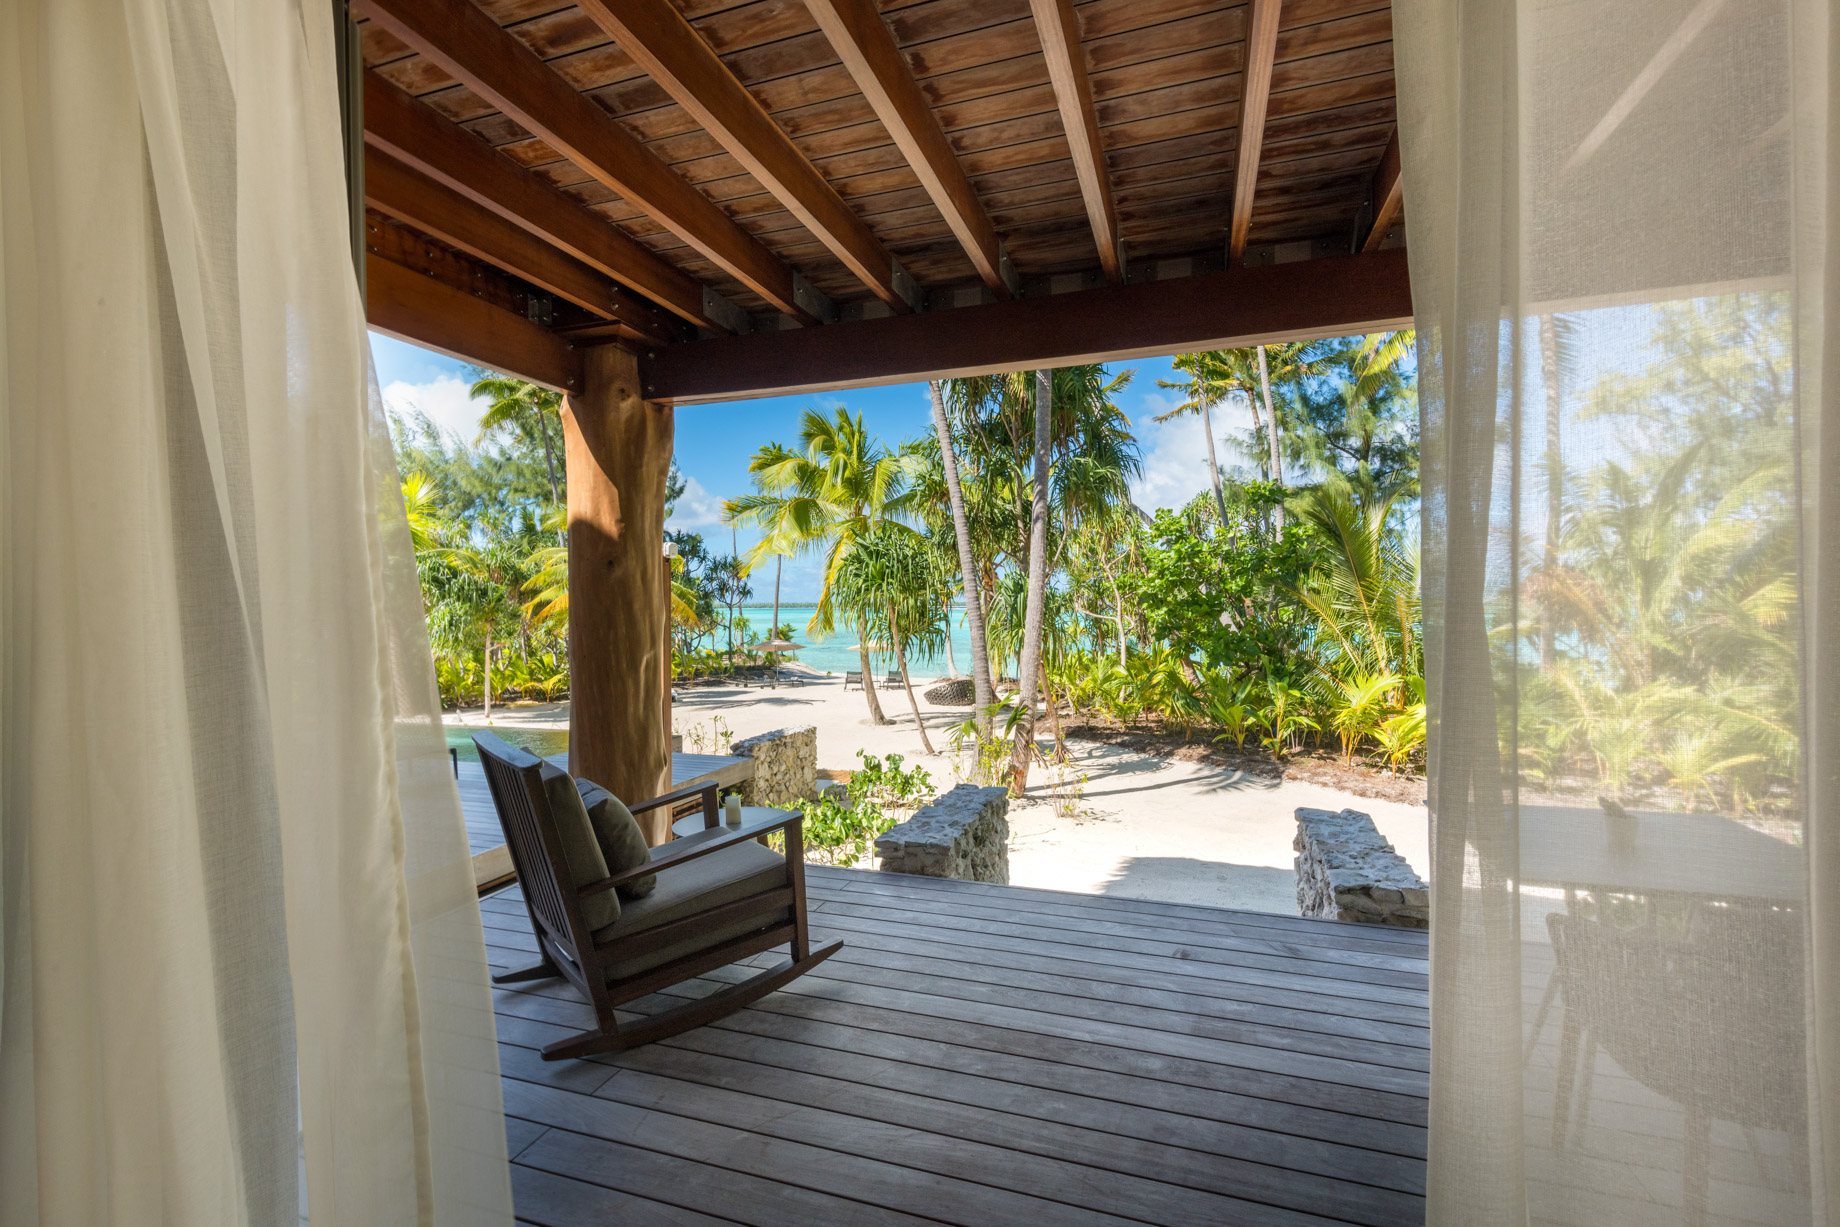 The Brando Resort – Tetiaroa Private Island, French Polynesia – The Brando Residence Deck